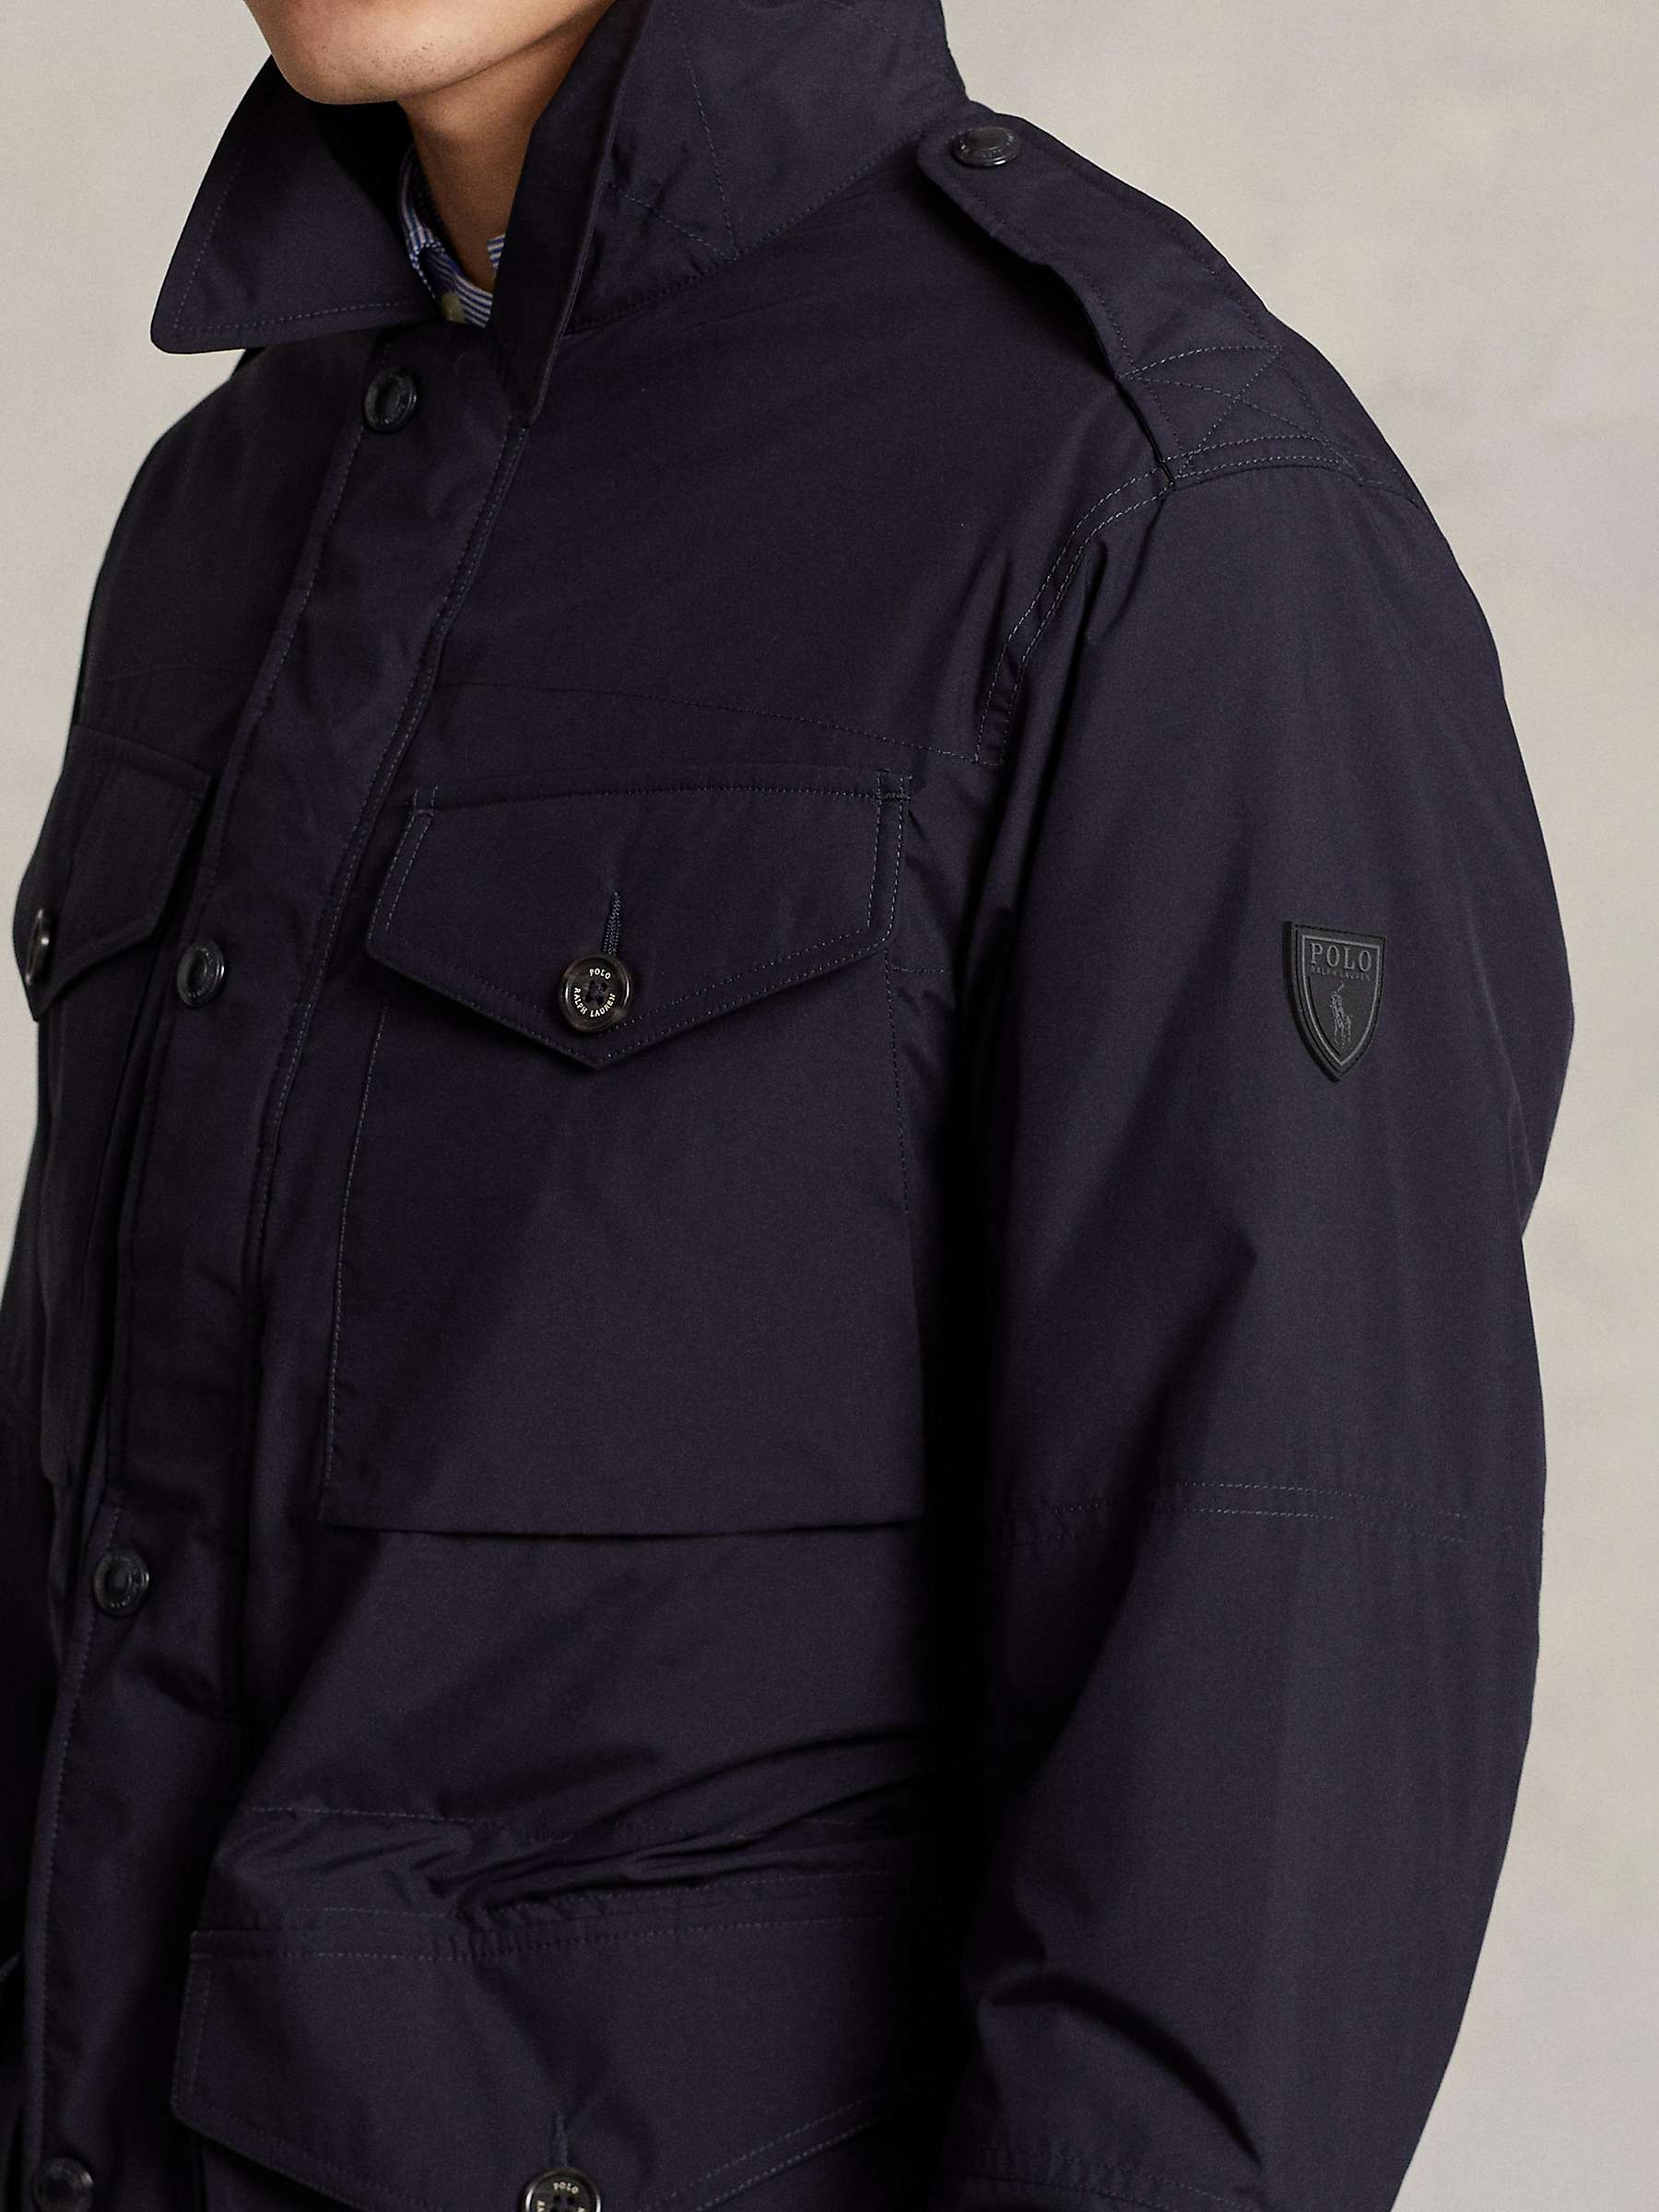 Buy Polo Ralph Lauren Field Jacket, Navy Online at johnlewis.com